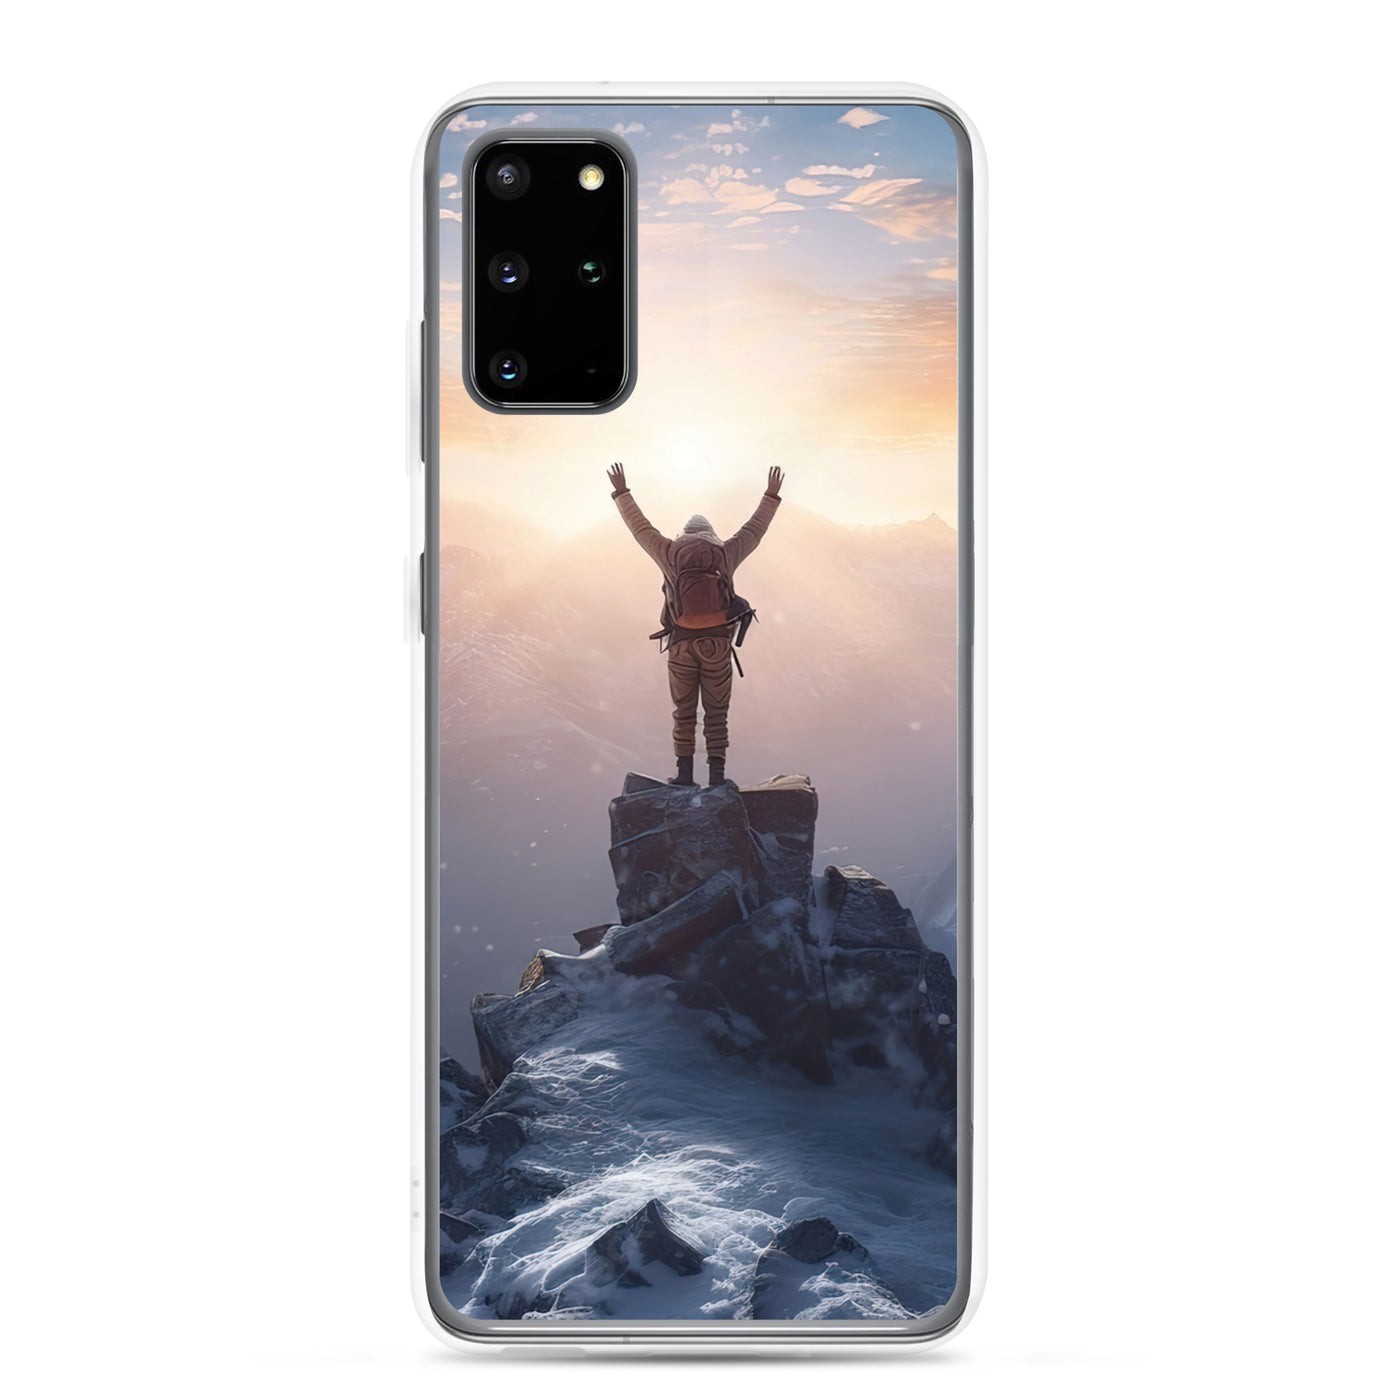 Mann auf der Spitze eines Berges - Landschaftsmalerei - Samsung Schutzhülle (durchsichtig) berge xxx Samsung Galaxy S20 Plus